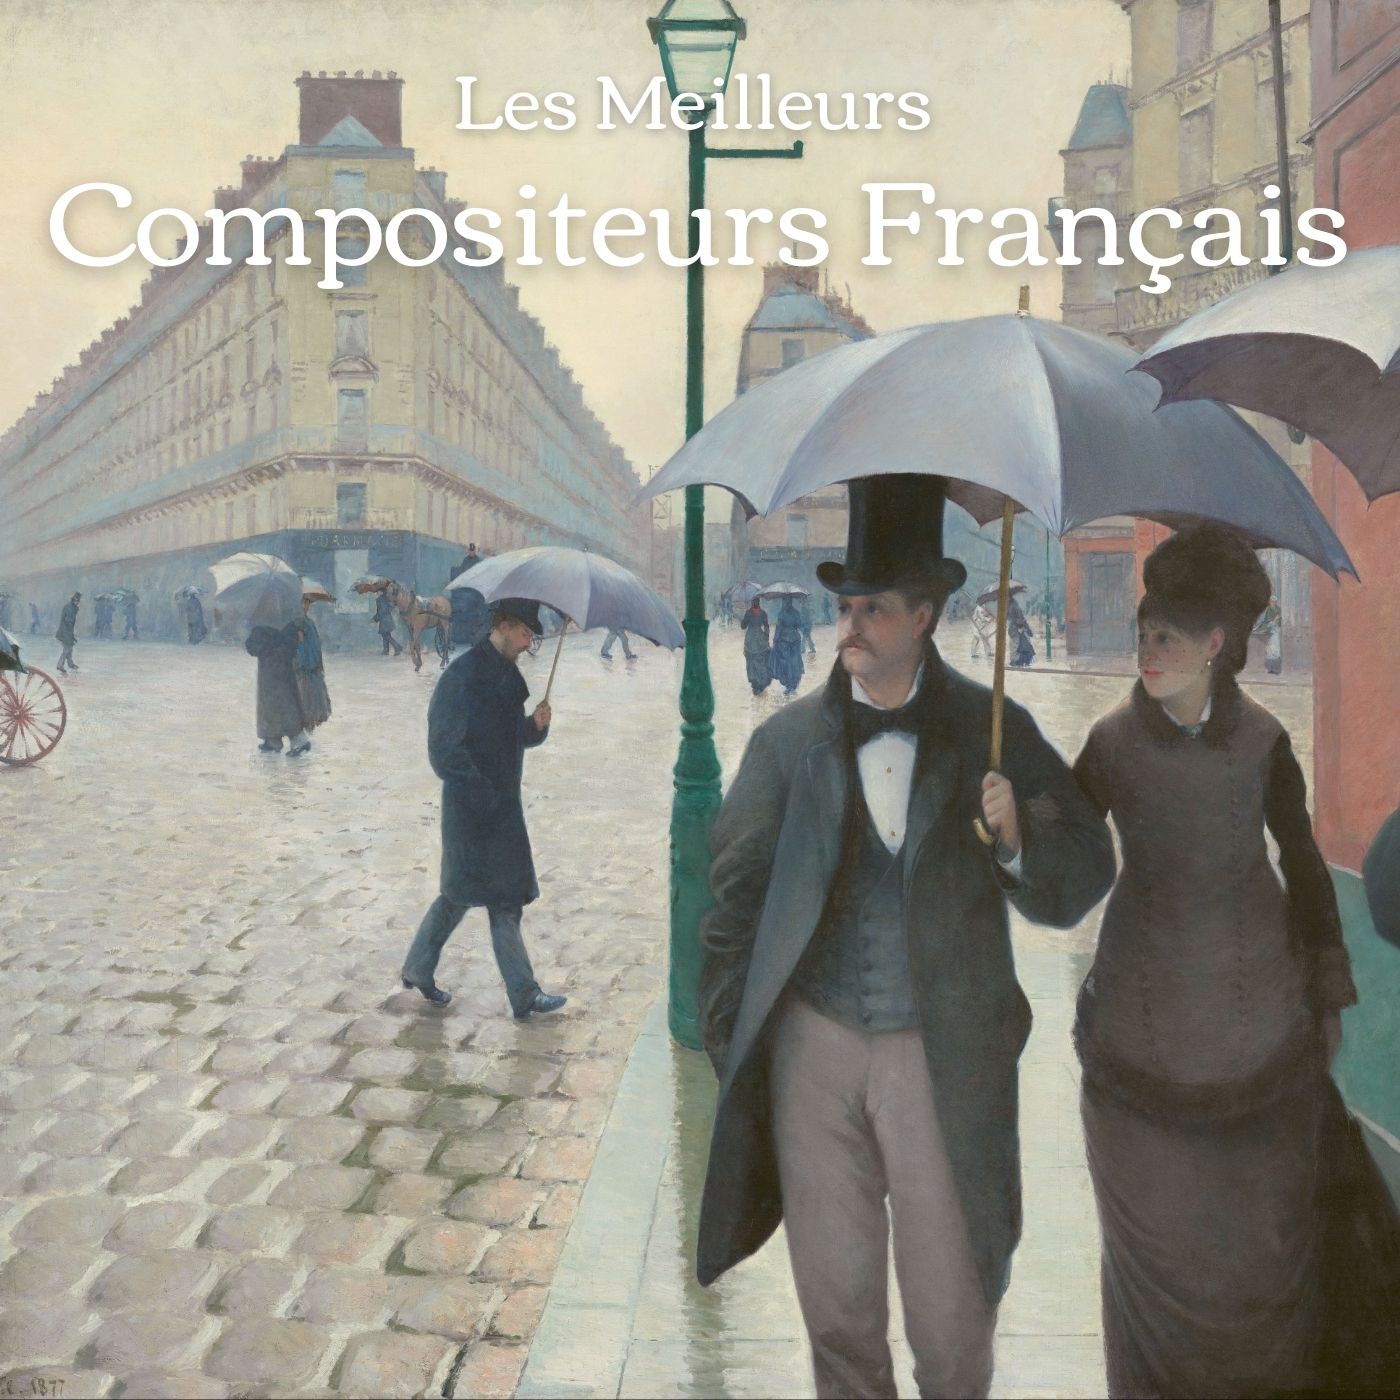 Les meilleurs compositeurs français